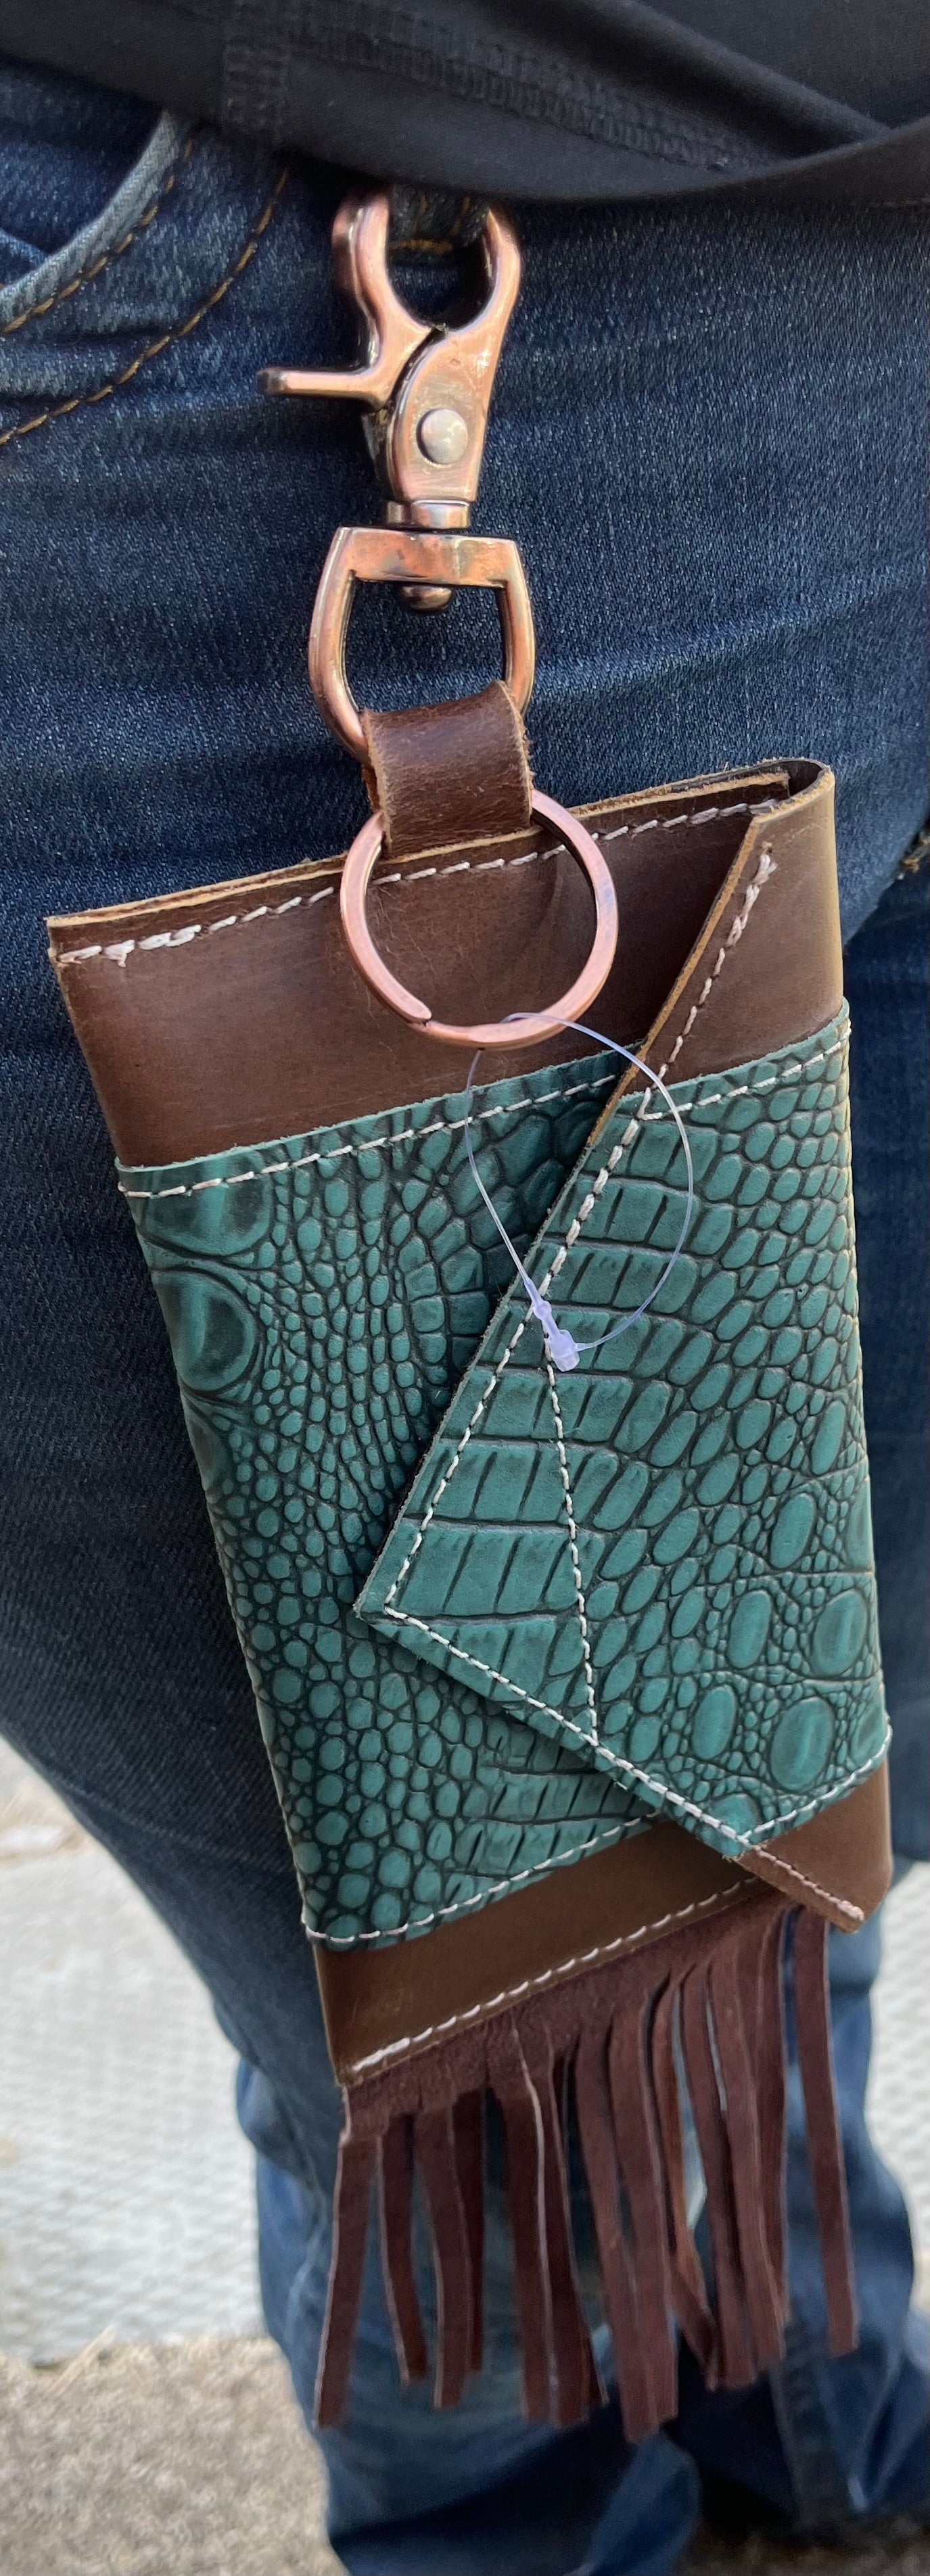 Turquoise gator clip on phone case with fringe